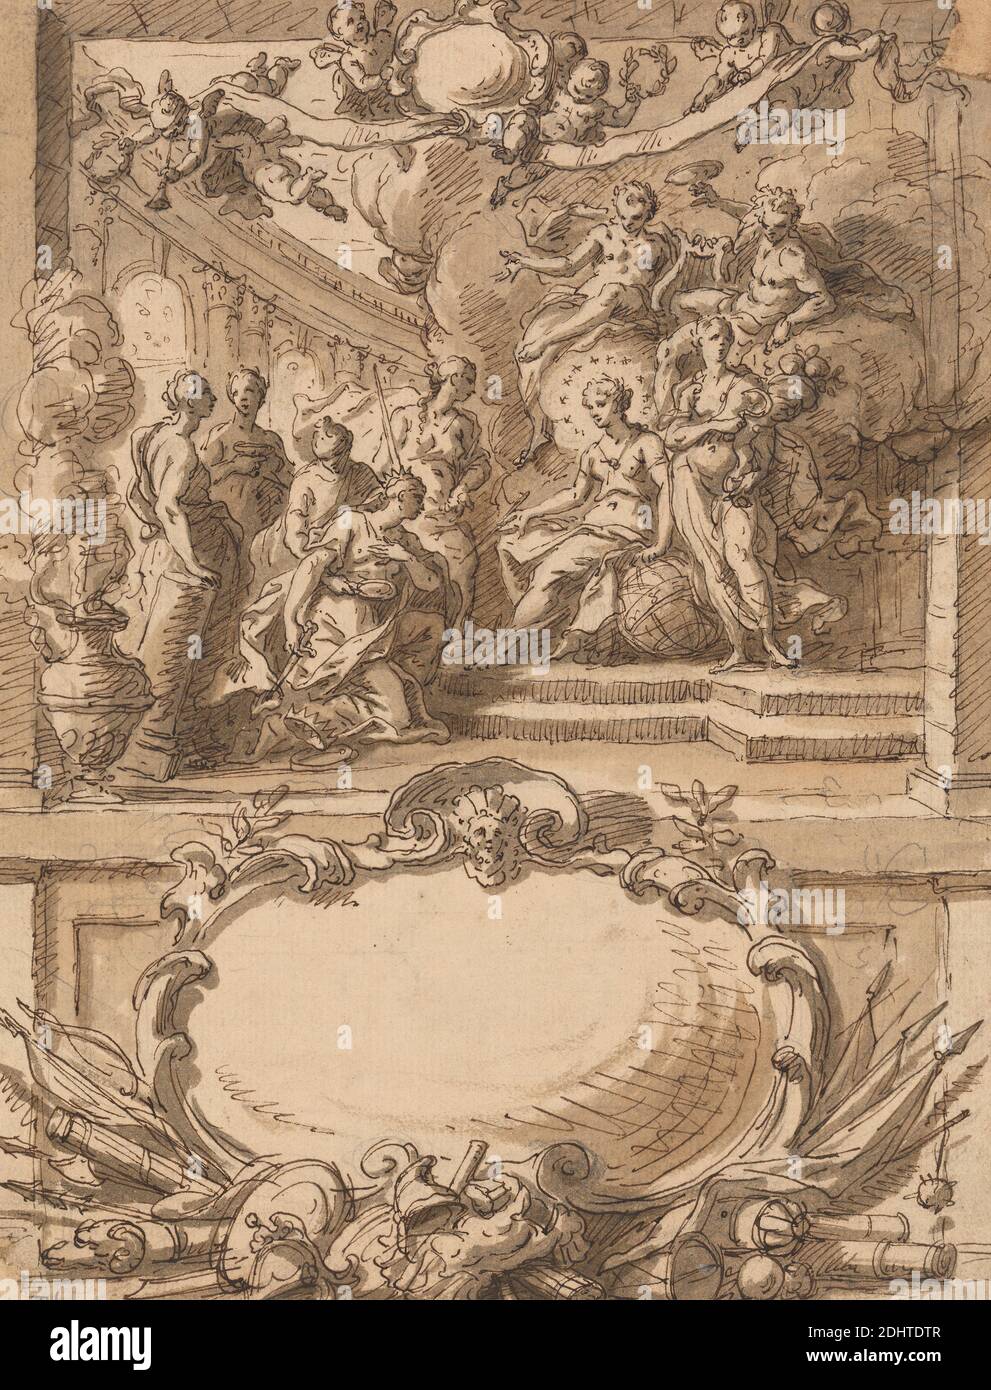 Design for a Wall Panel, Sir James Thornhill, 1675–1734, inglese, non satinato, penna e inchiostro marrone con lavaggio marrone su grafite media, moderatamente testurizzata, carta crema, foglio: 9 1/4 x 7 1/8 pollici (23.5 x 18.1 cm) e montaggio: 12 x 15 pollici (30.5 x 38.1 cm), anfore, soggetto architettonico, intagli, nubi, corone (componenti del costume), figure (rappresentazioni), globo (sfera cartografica), dipinti di storia, lira, pannello (area ornamentale), putti, soggetto religioso e mitologico, falce, scale, stelle, trombe, muro, armi e munizioni Foto Stock